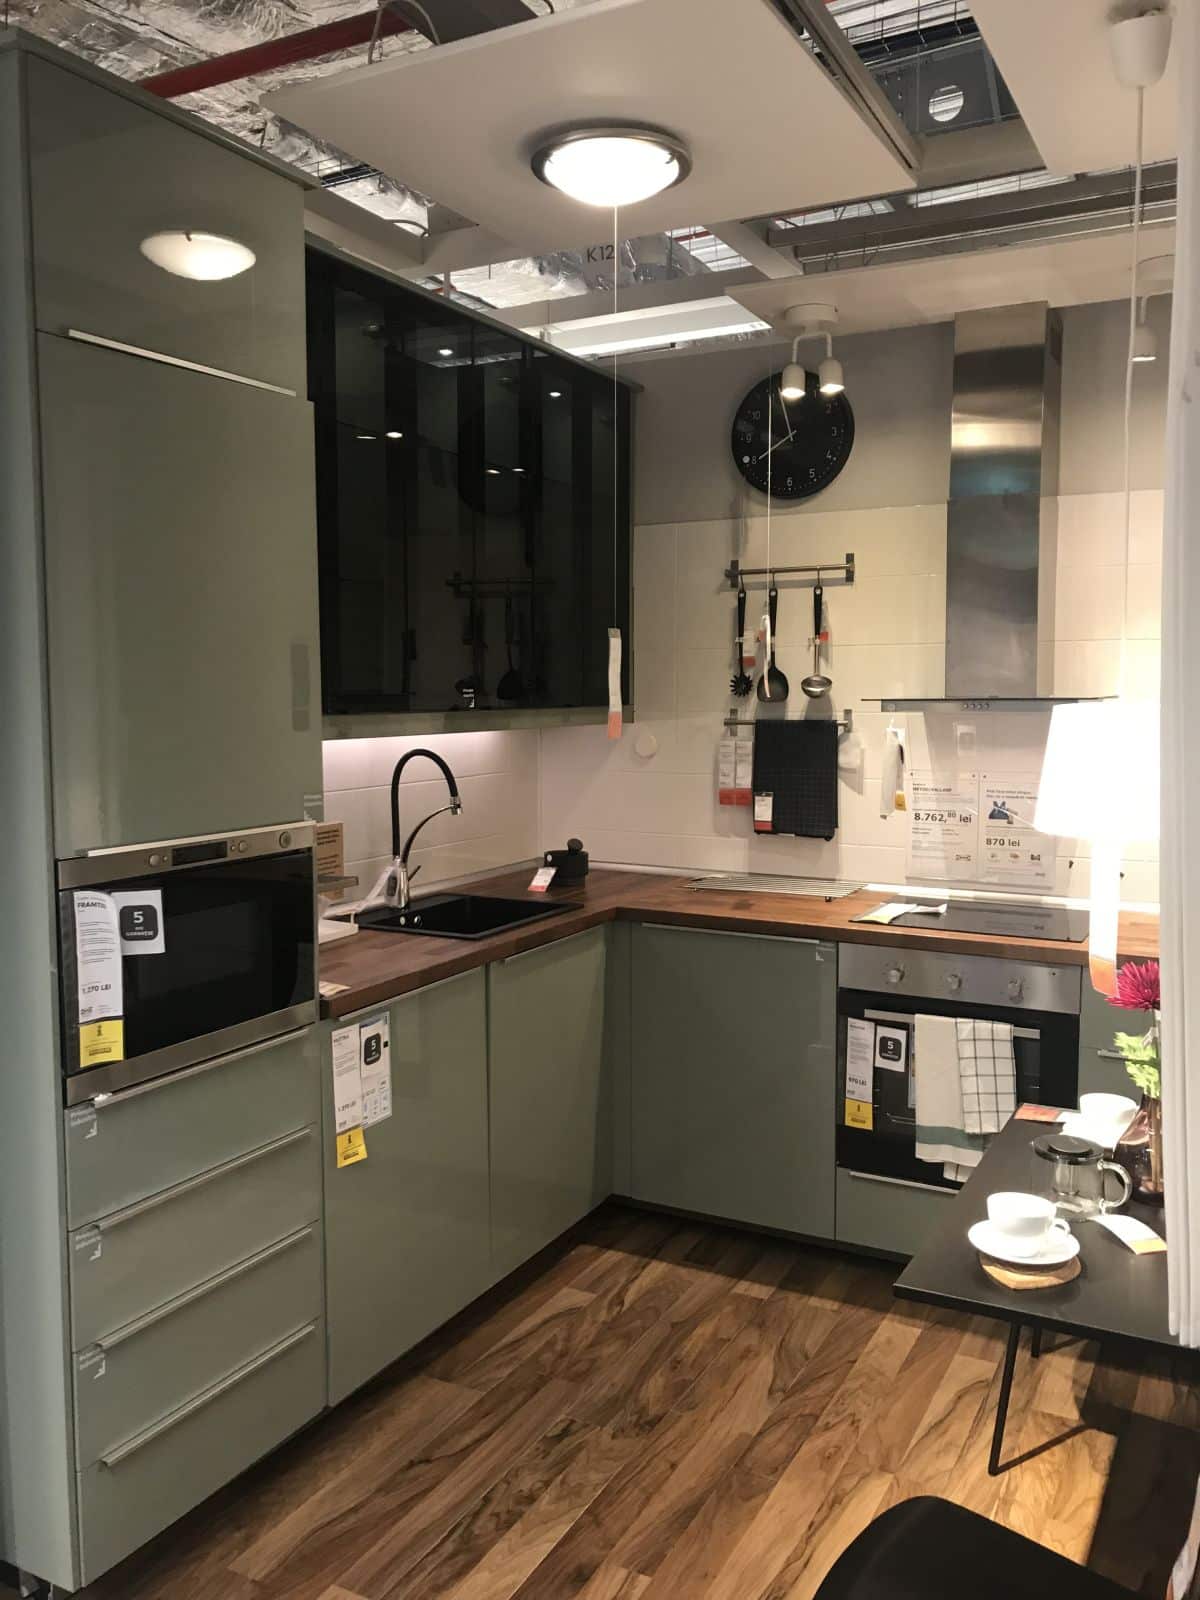 Les portes et tiroirs brillants ajoutent de la couleur et de la brillance aux cuisines IKEA.